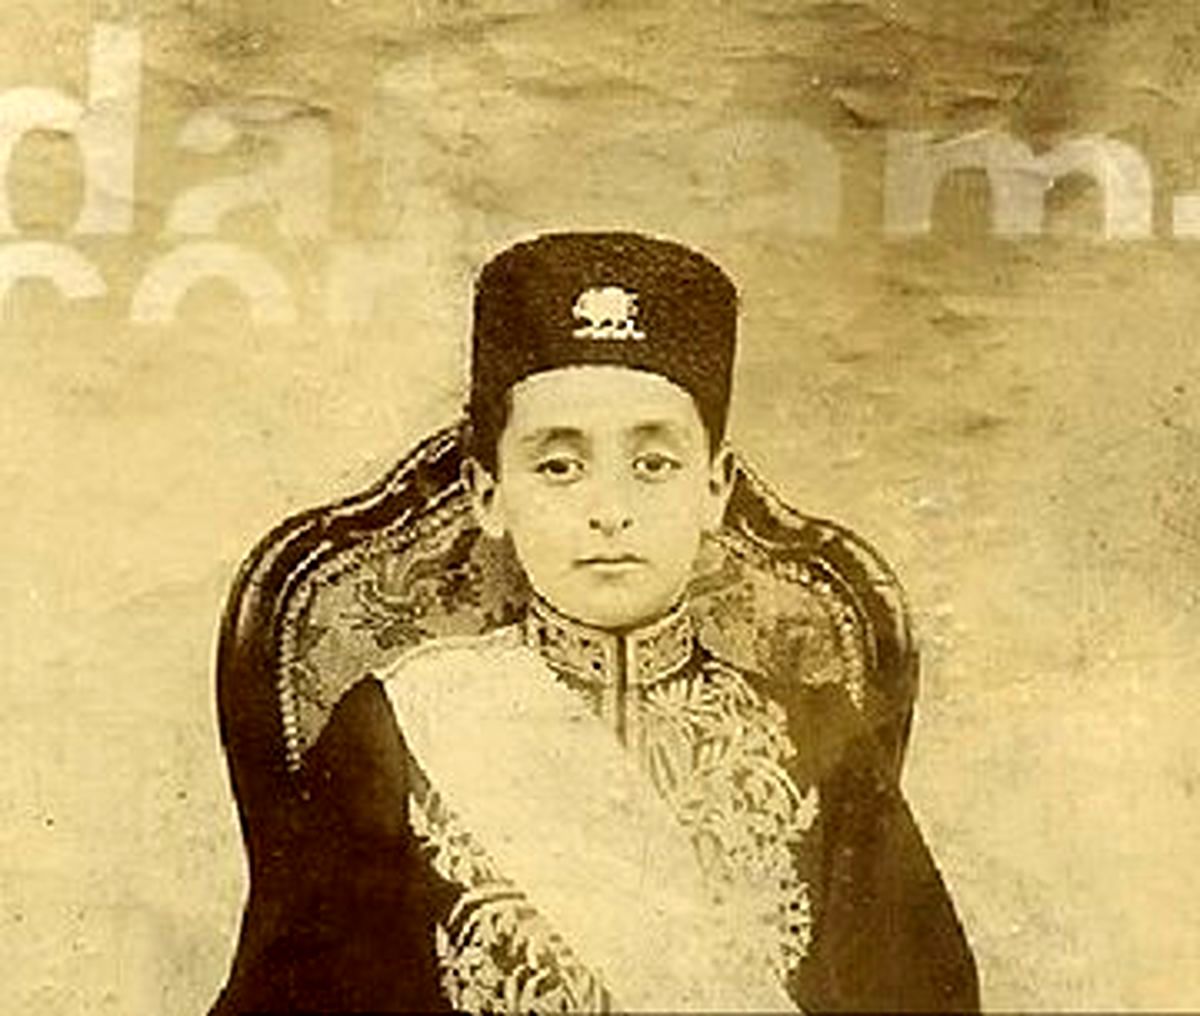 یک عکس زیرخاکی از ناصرالدین شاه در حرمسرا